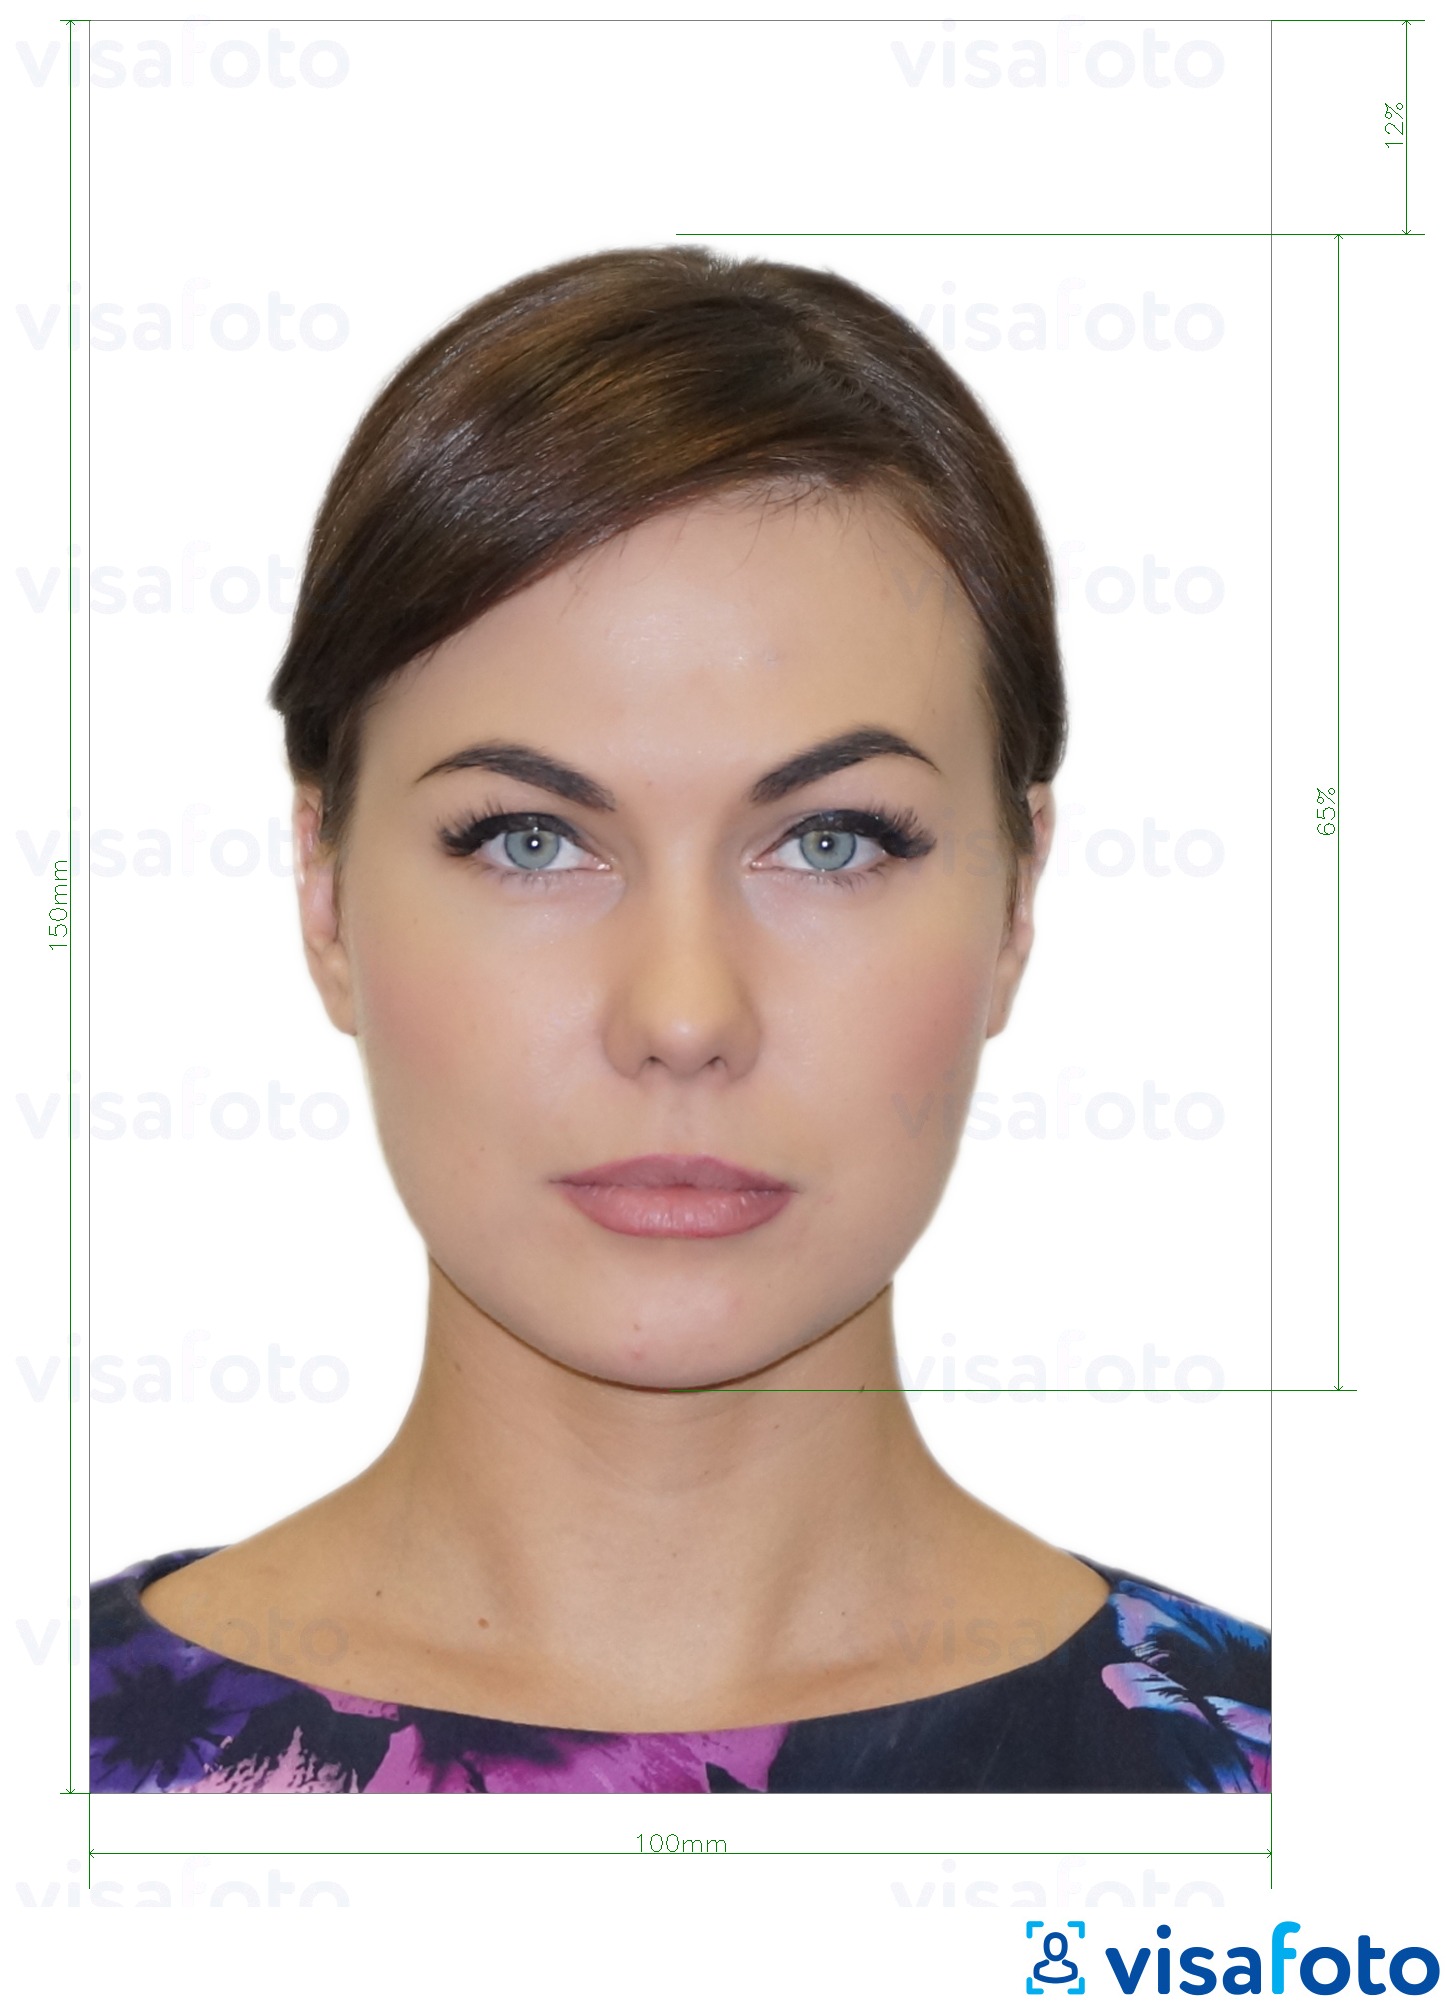 Молдова ID картасы (Buletin de identitate) 10x15 см үшін нақты мөлшер өлшемі бар фото үлгісі